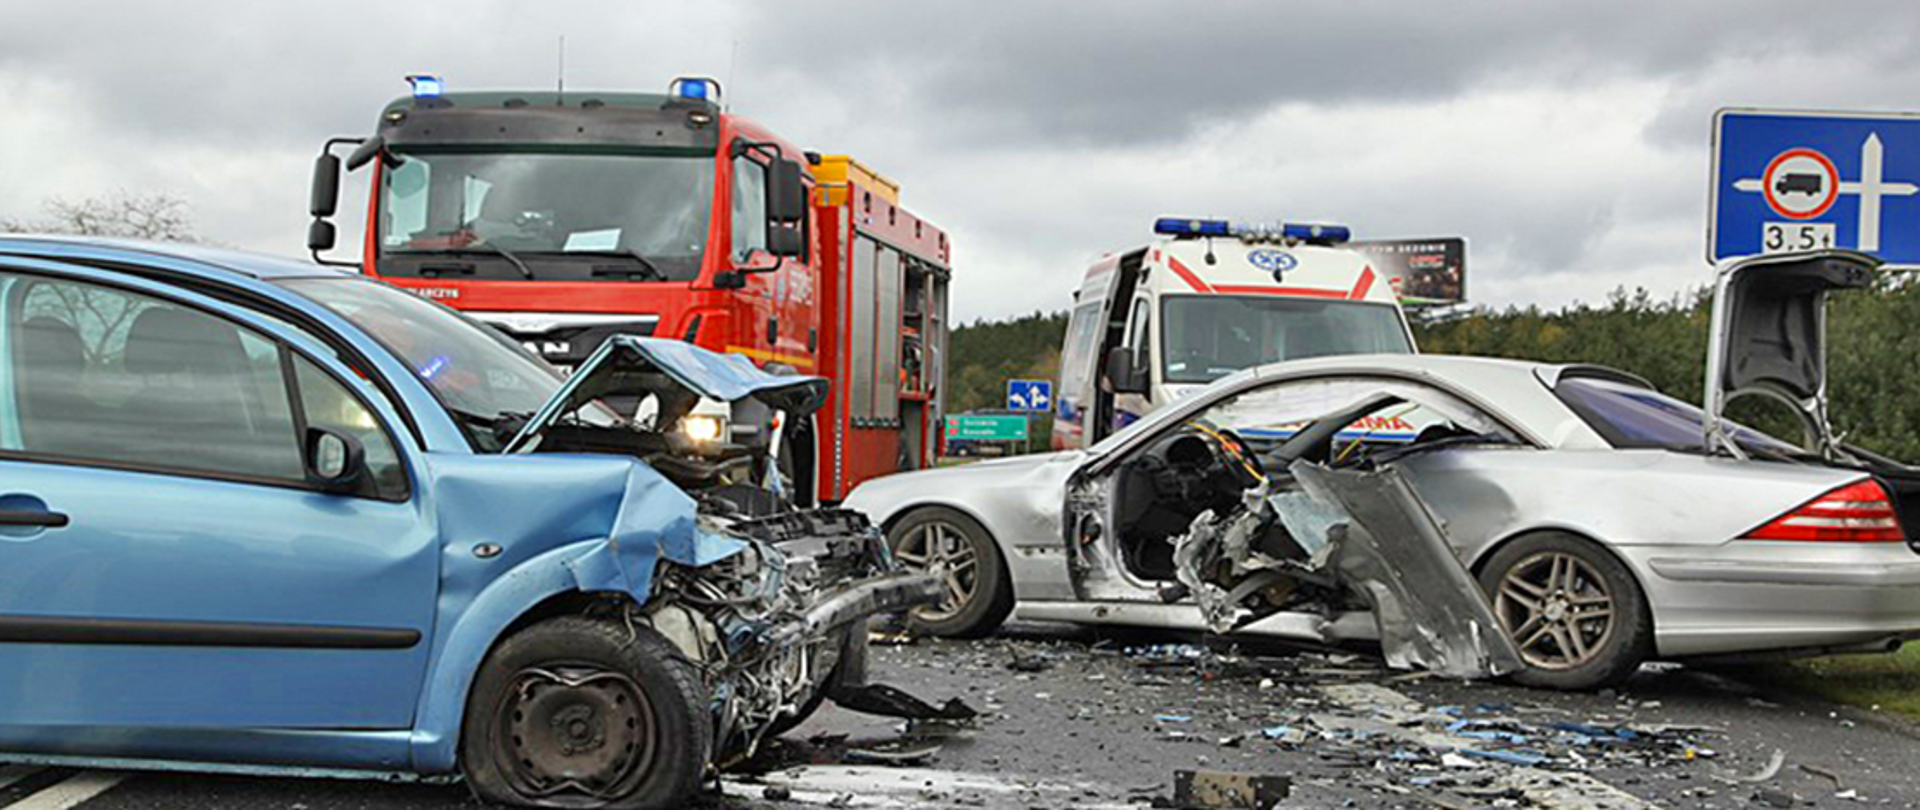 Fotografia przedstawia dwa uszkodzone samochody osobowe na skutek wypadku drogowego. W tle widać pojazd straży pożarnej oraz karetkę.